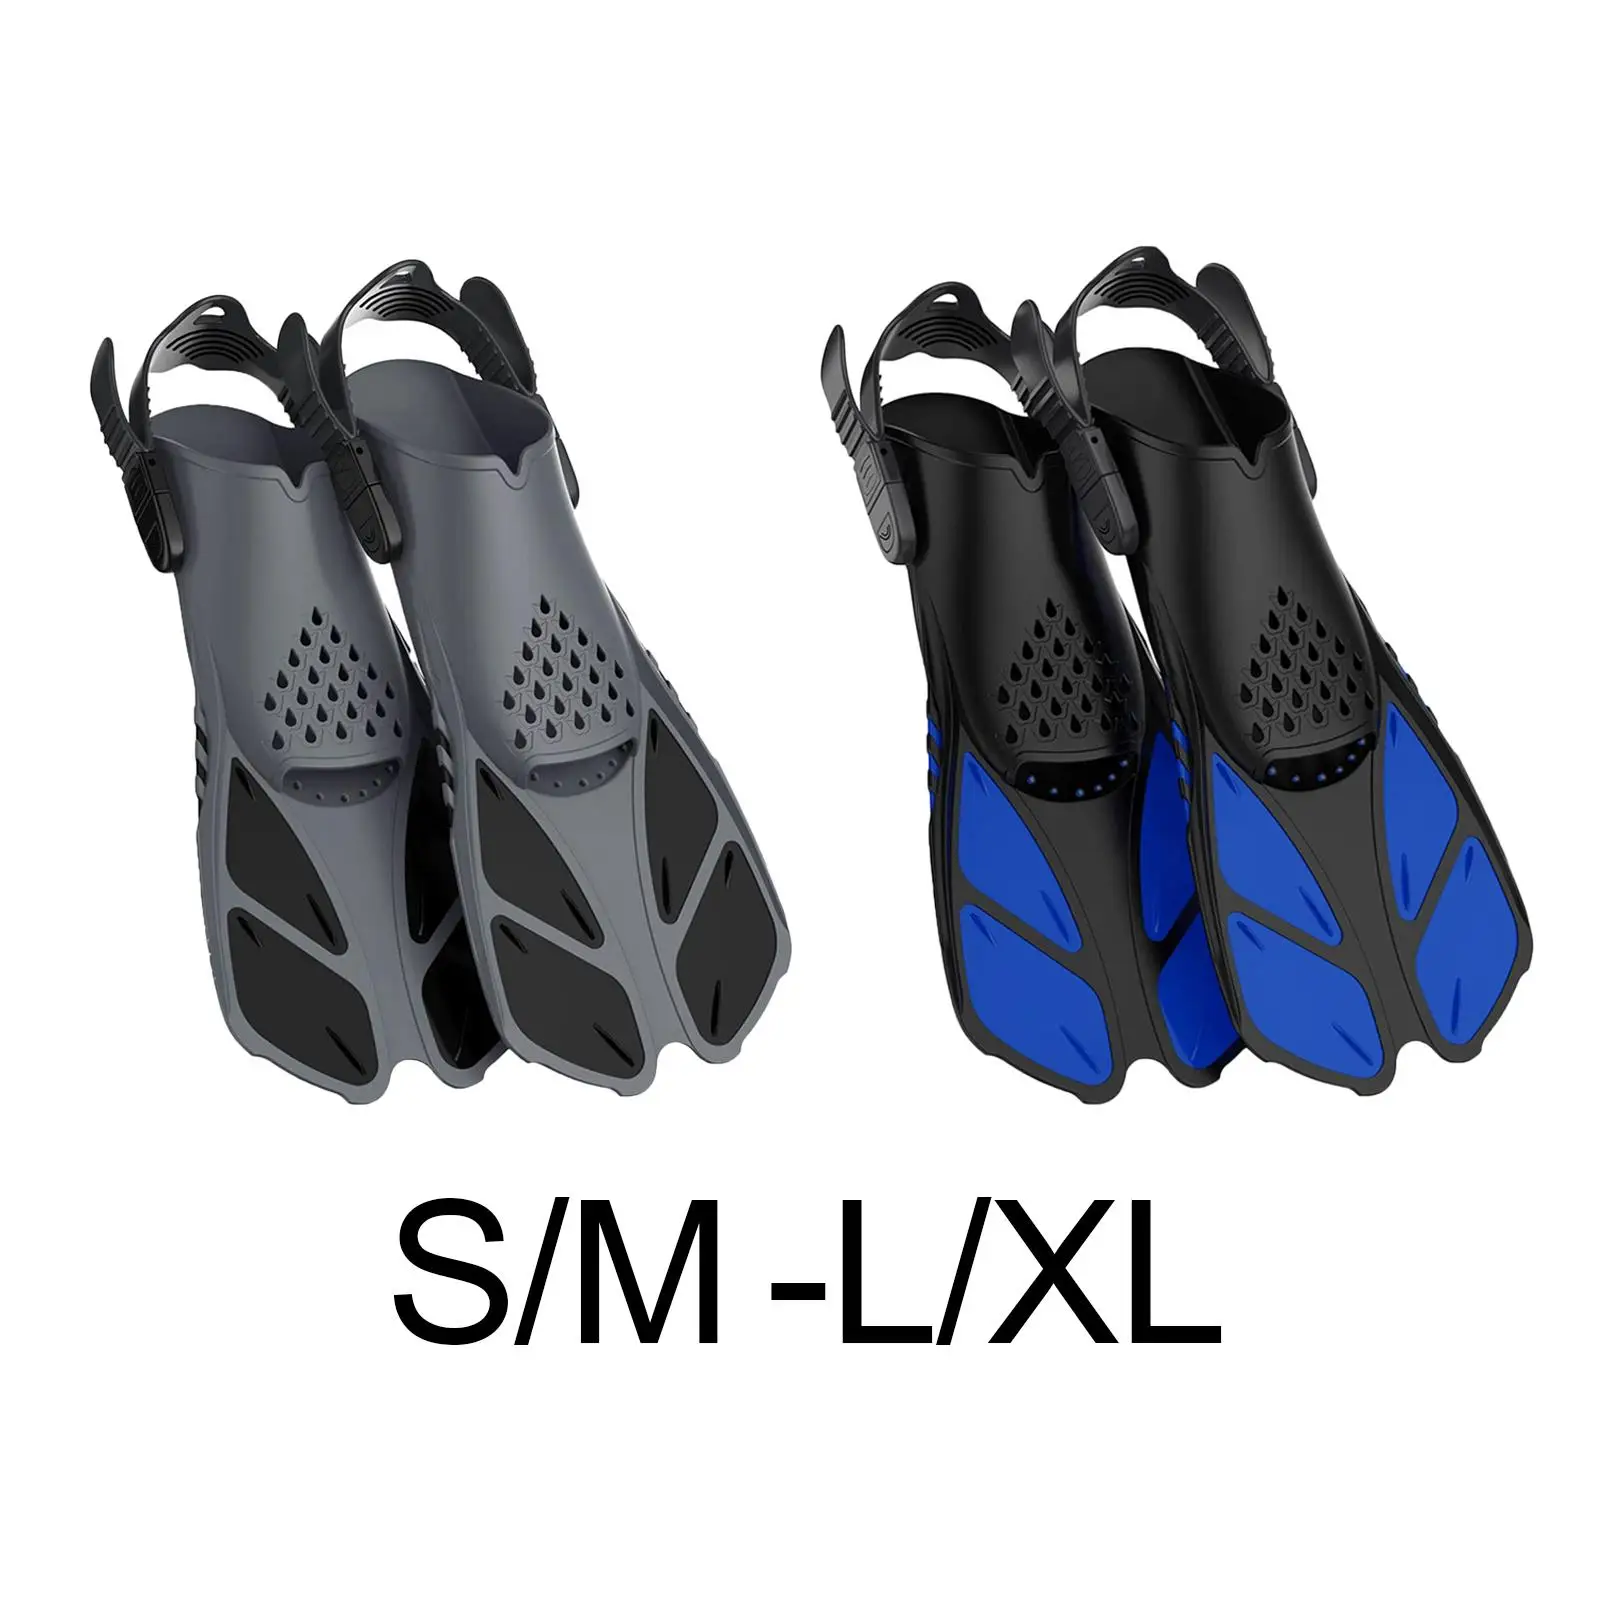 2x Flexible Swimming Flippers Swim Open Heel Professional Feet Shoe for Water Sports Snorkeling Adults Women Men Beginners